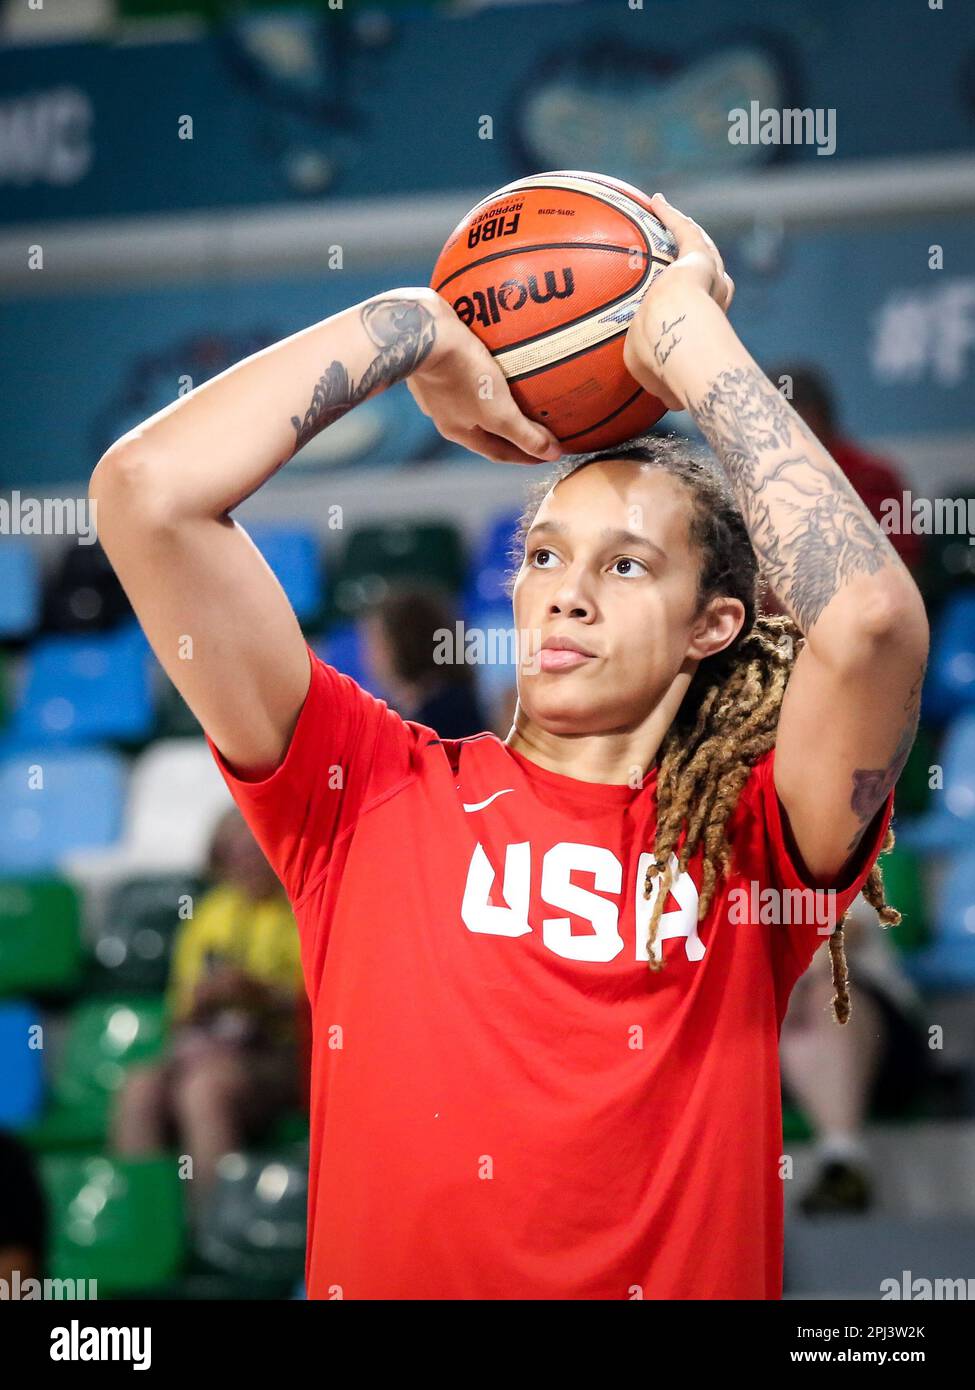 Espagne, Ténérife, 25 septembre 2018: BRITTNEY Griner, JOUEUSE DE basket-ball AMÉRICAINE, lors de la coupe du monde de basket-ball féminin Banque D'Images